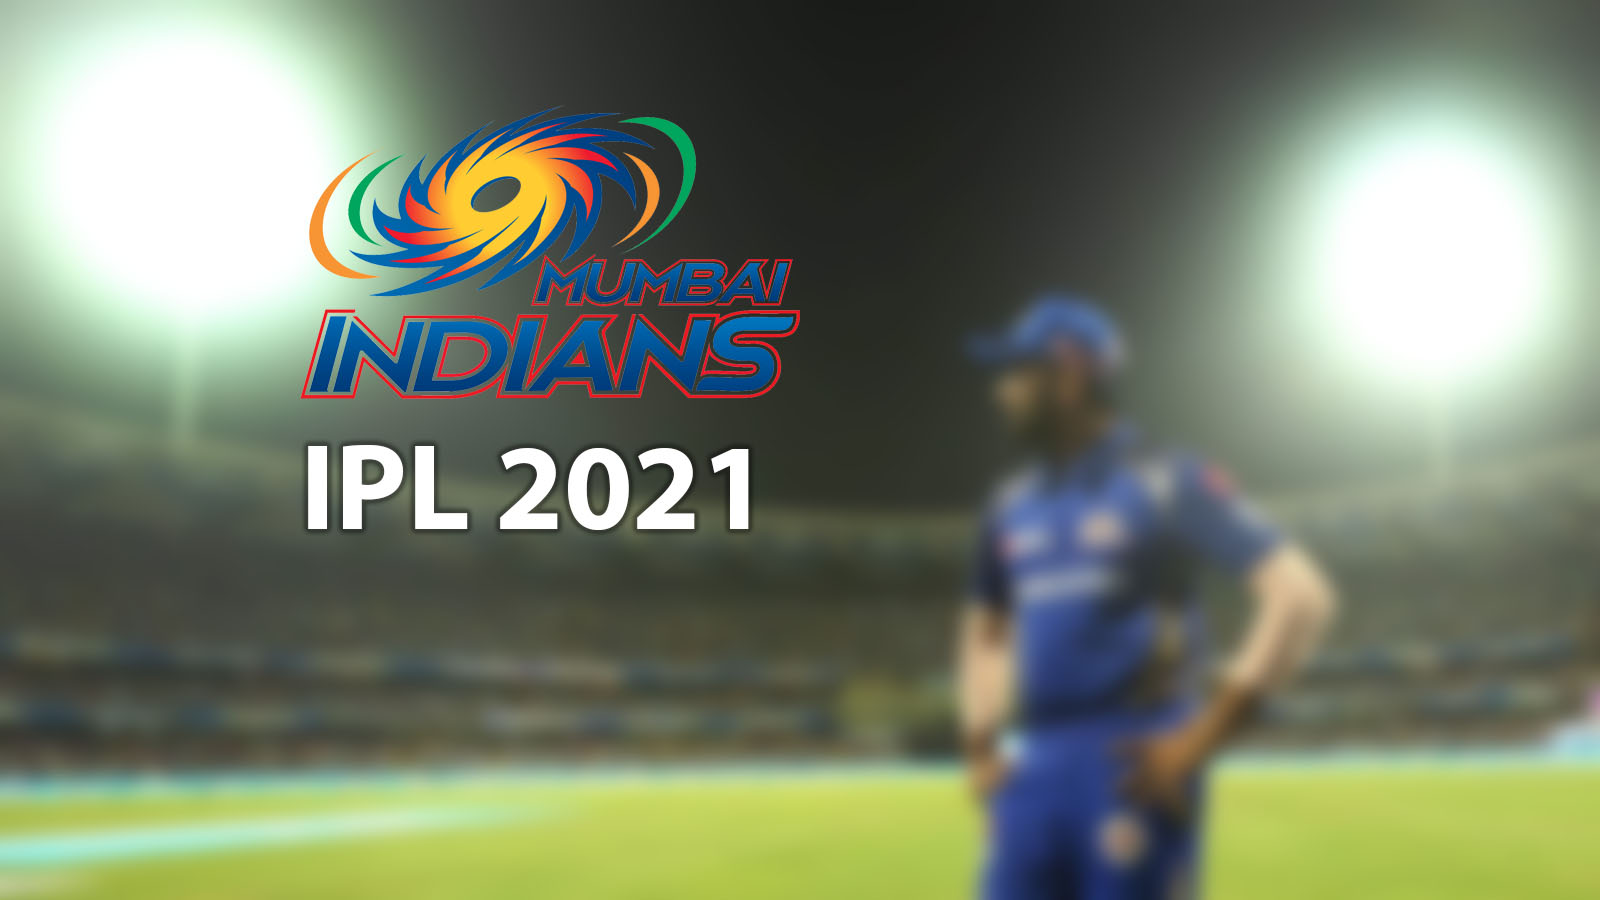 IPL 2021 Schedule of Mumbai Indians